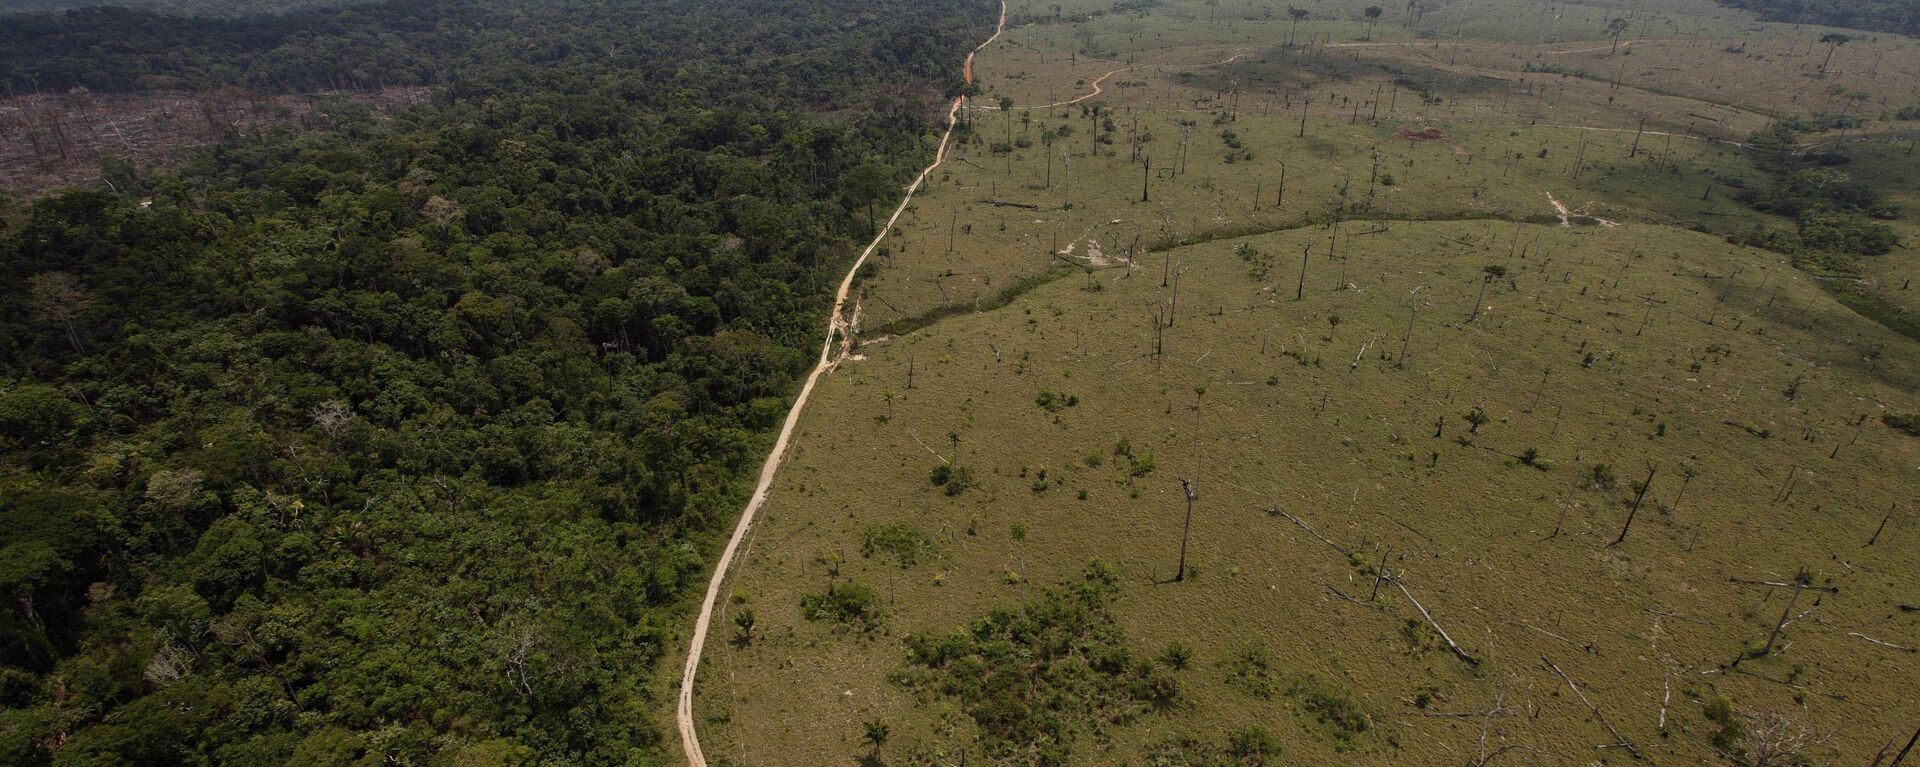 Una área deforestada en la Amazonía brasileña - Sputnik Mundo, 1920, 16.11.2021